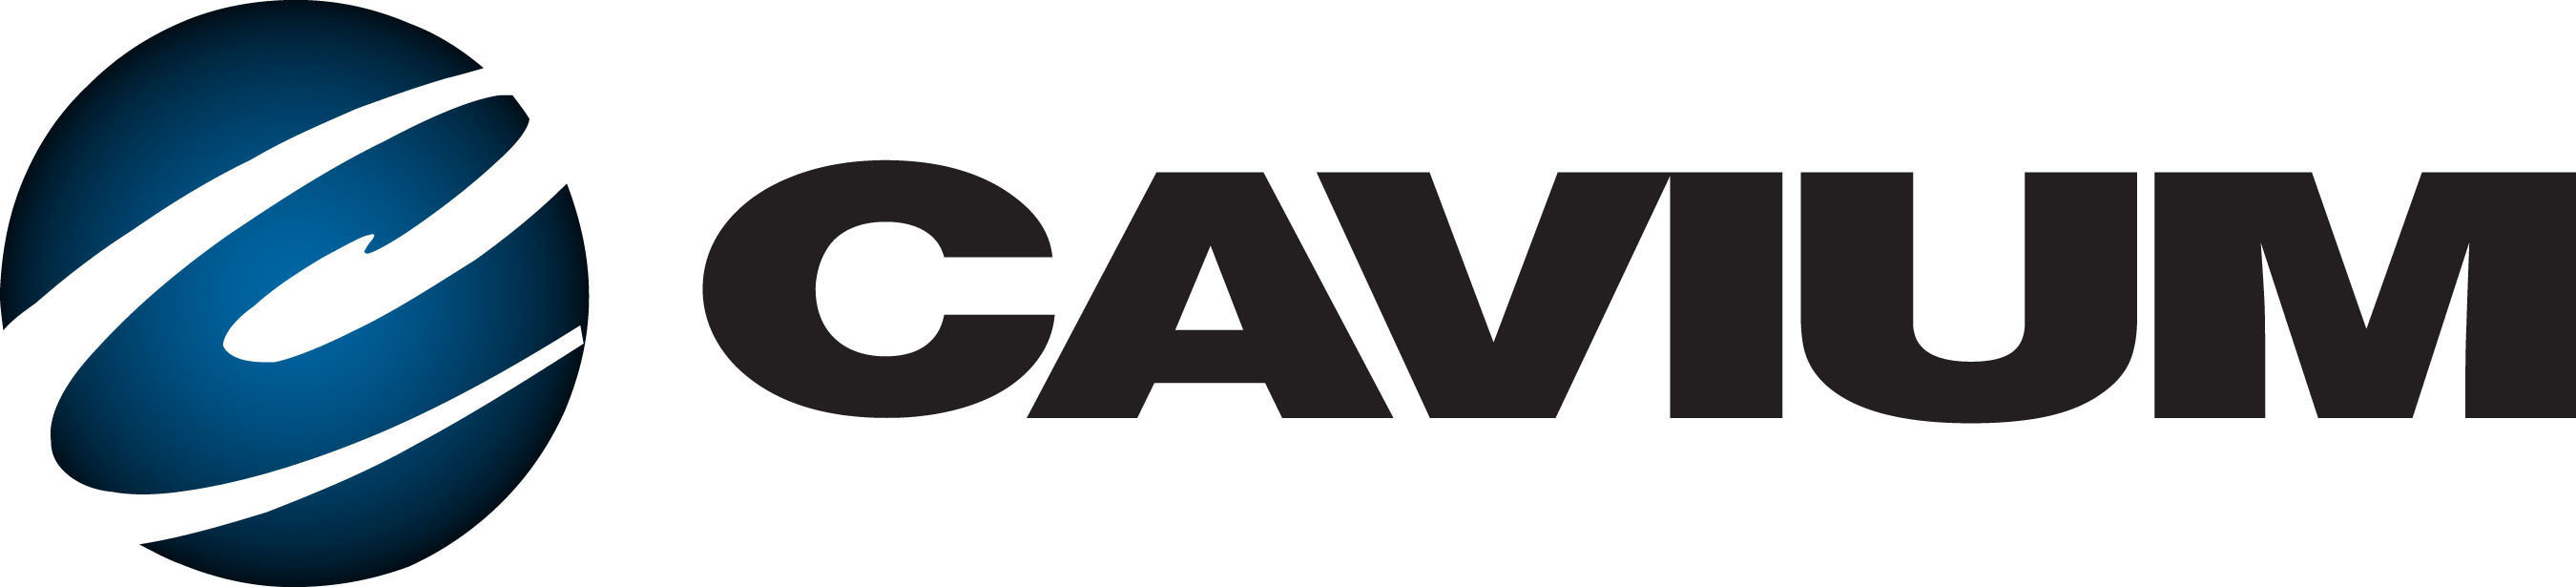 Cavium, Inc. Logo.